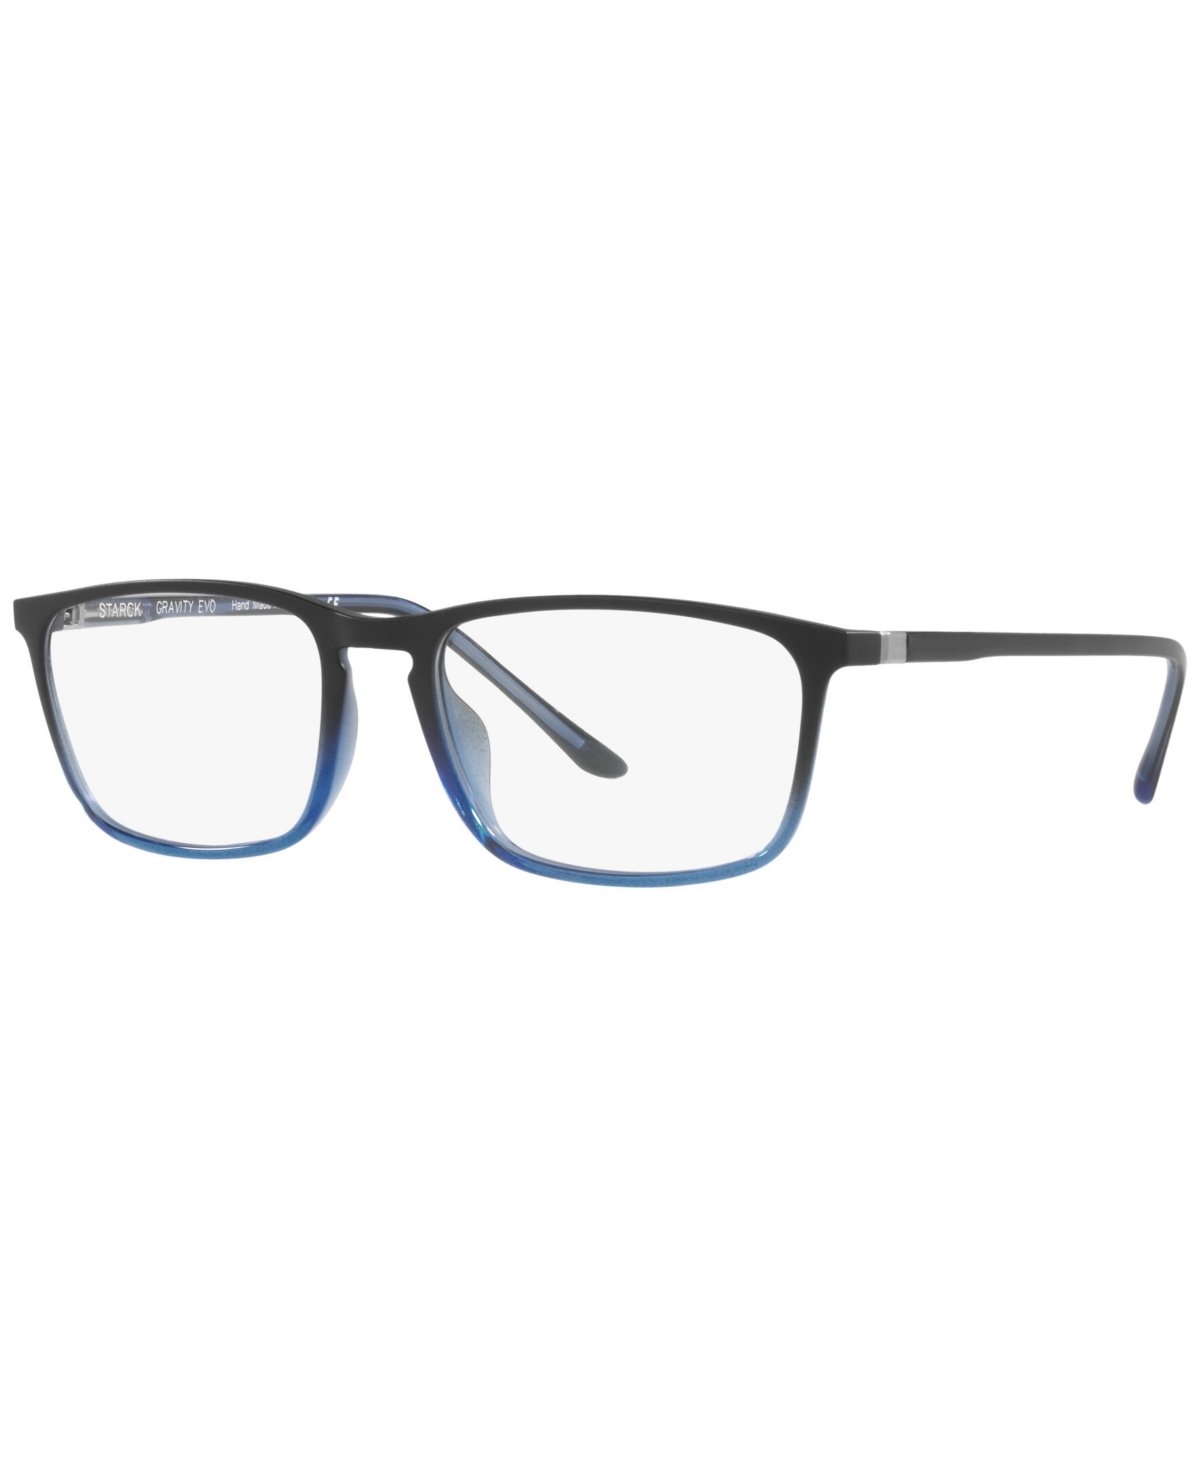 SH3073 Men's Pillow Eyeglasses - Black, Blue